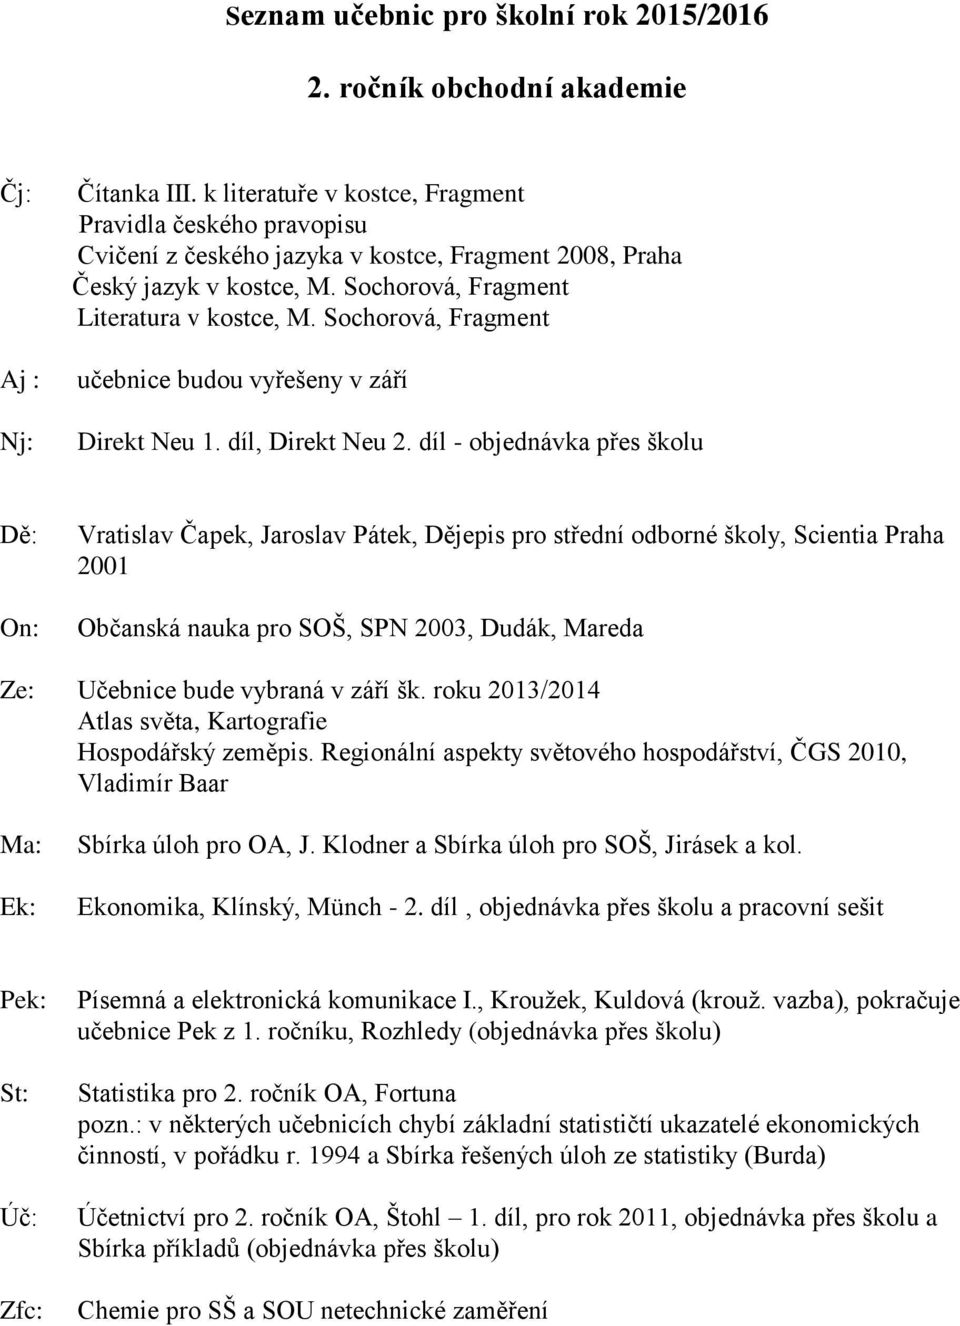 Seznam učebnic pro školní rok 2015/2016. Prima - PDF Stažení zdarma